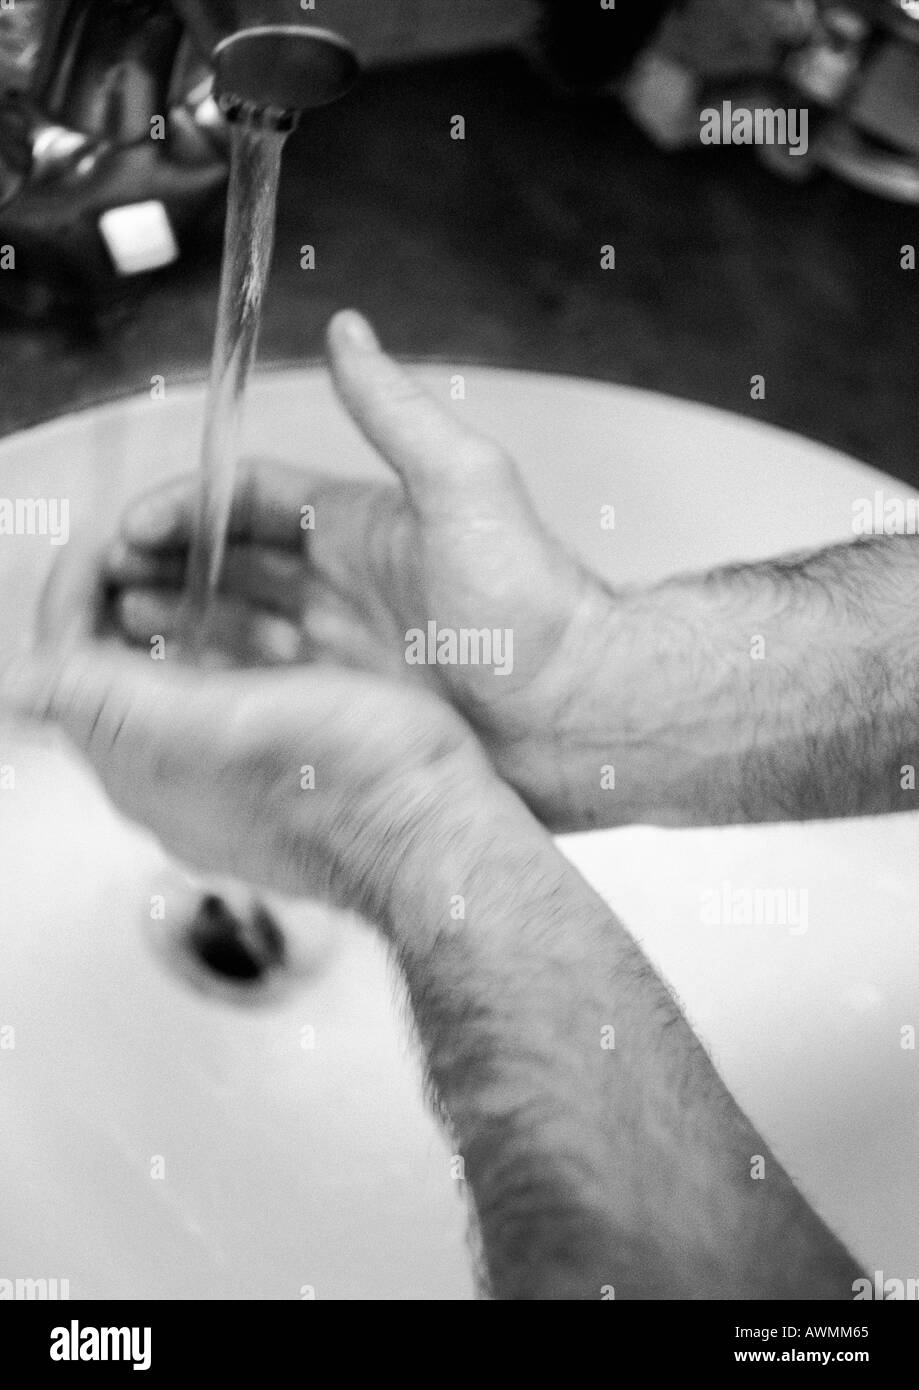 Die Hände des Mannes unter Wasserhahn, verschwommen, b&w Stockfoto